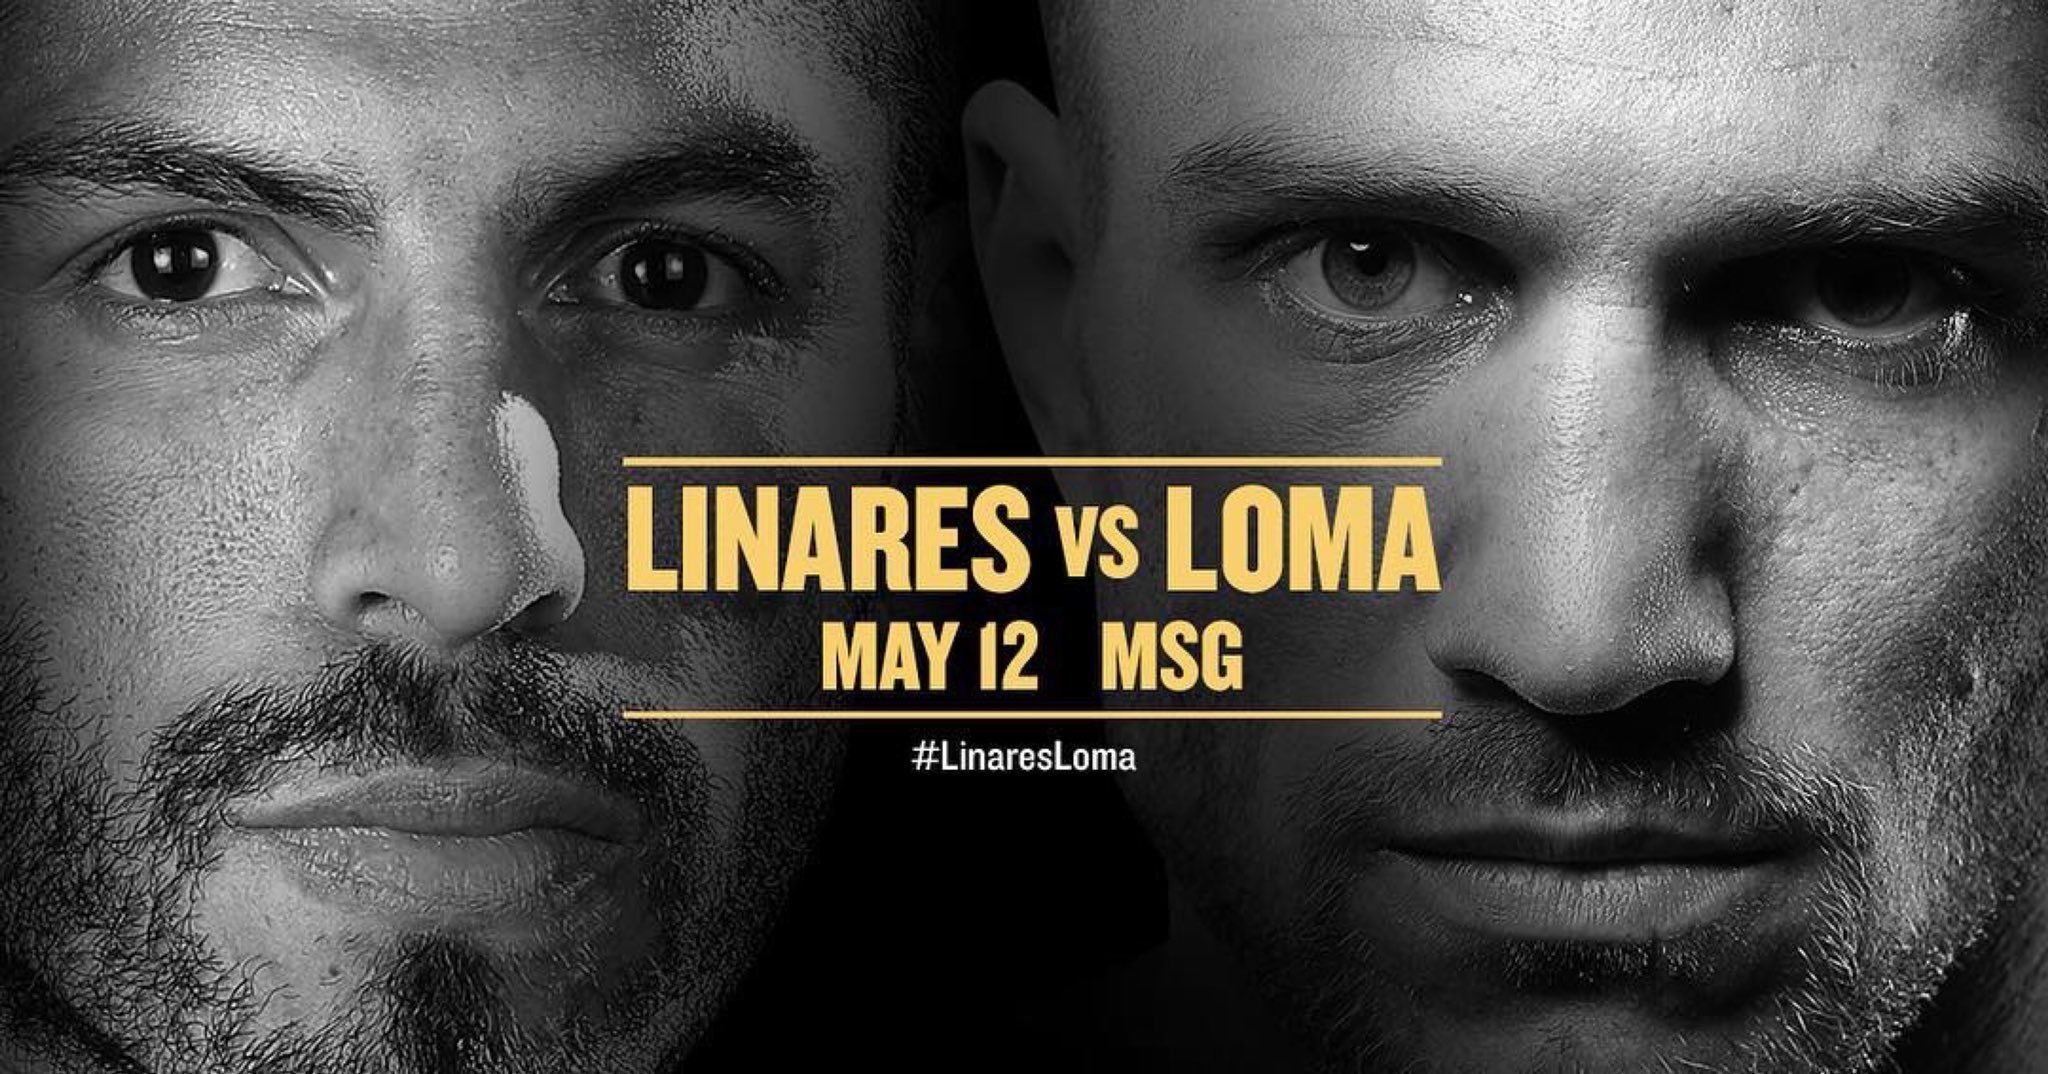 Ломаченко – Лінарес: онлайн бою 12 травня 2018 - трансляція